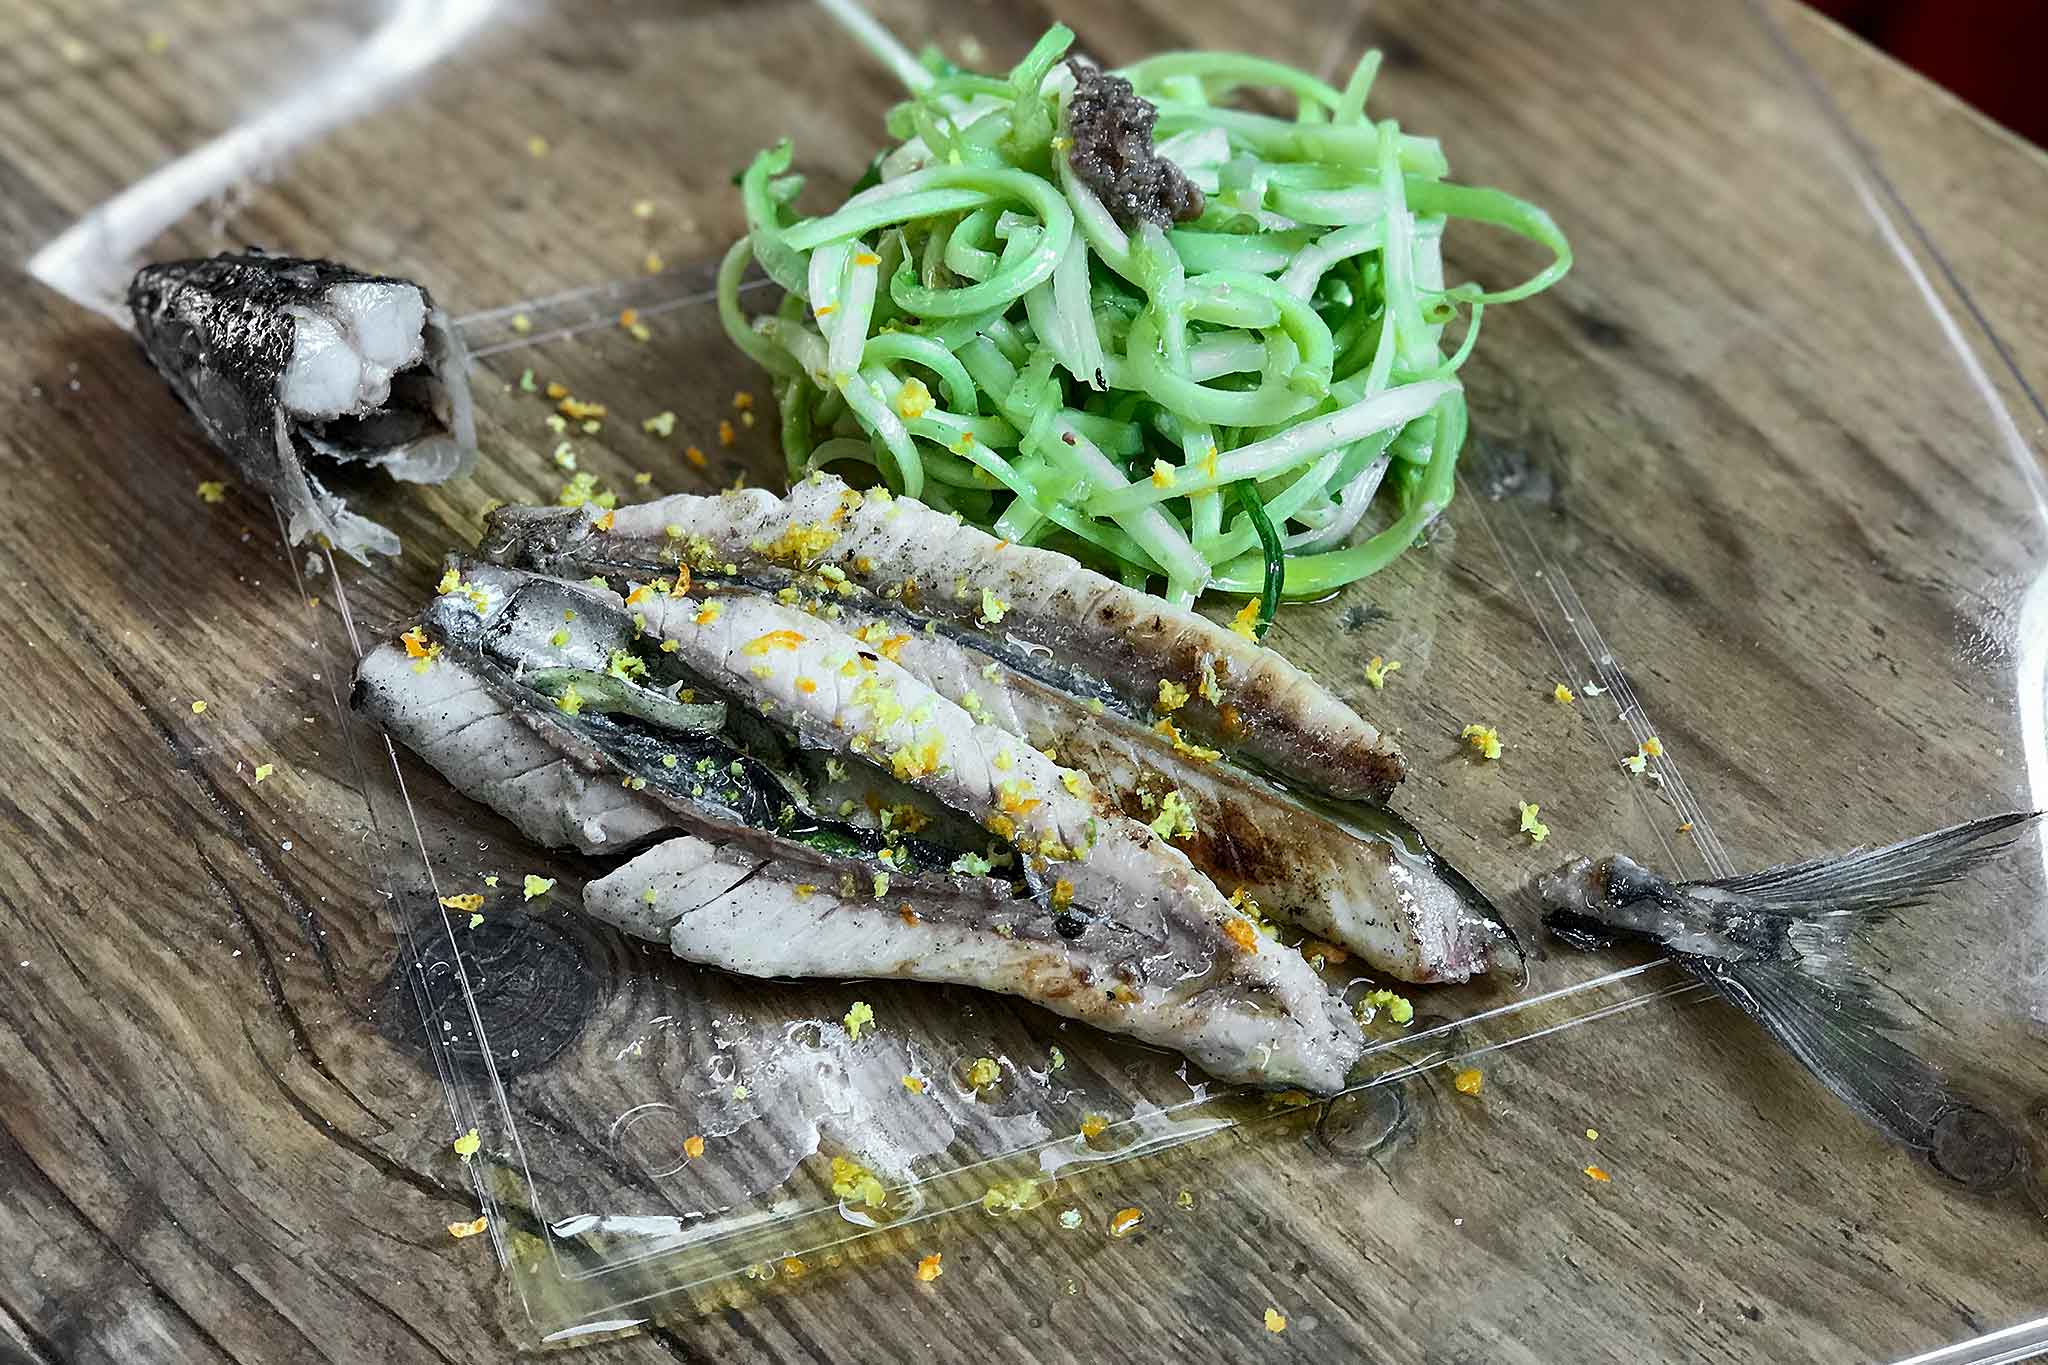 I migliori ristoranti di pesce low cost nel Lazio